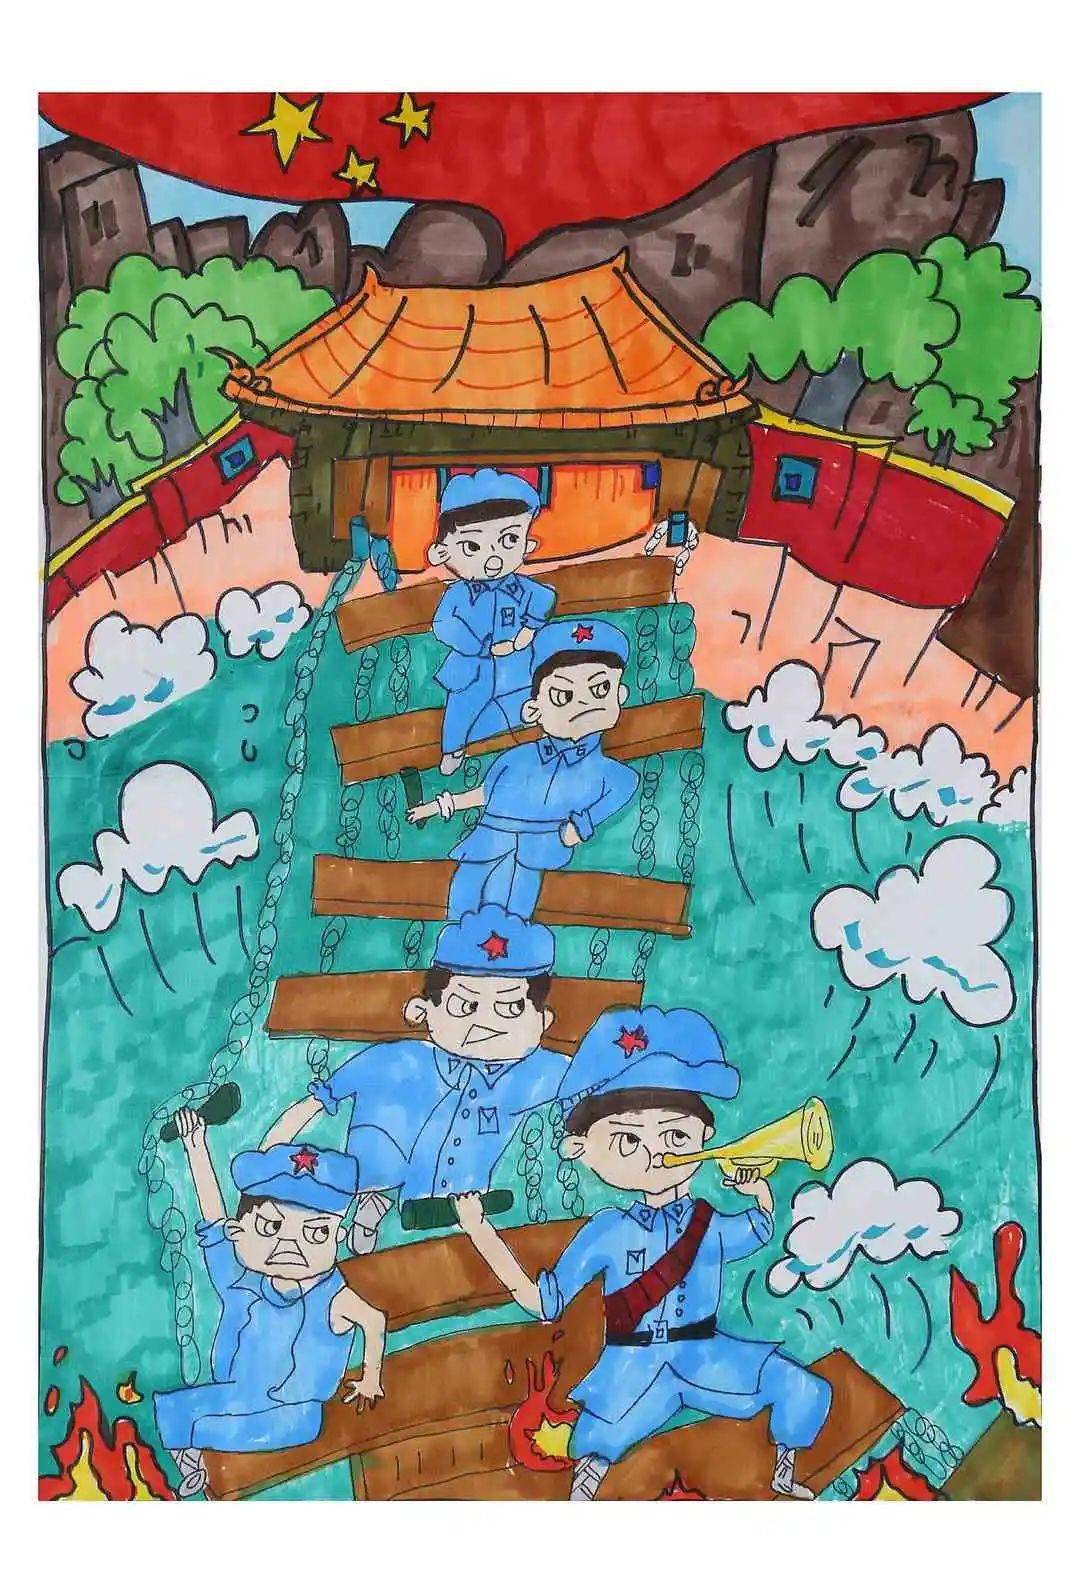 渡江战役儿童画图片